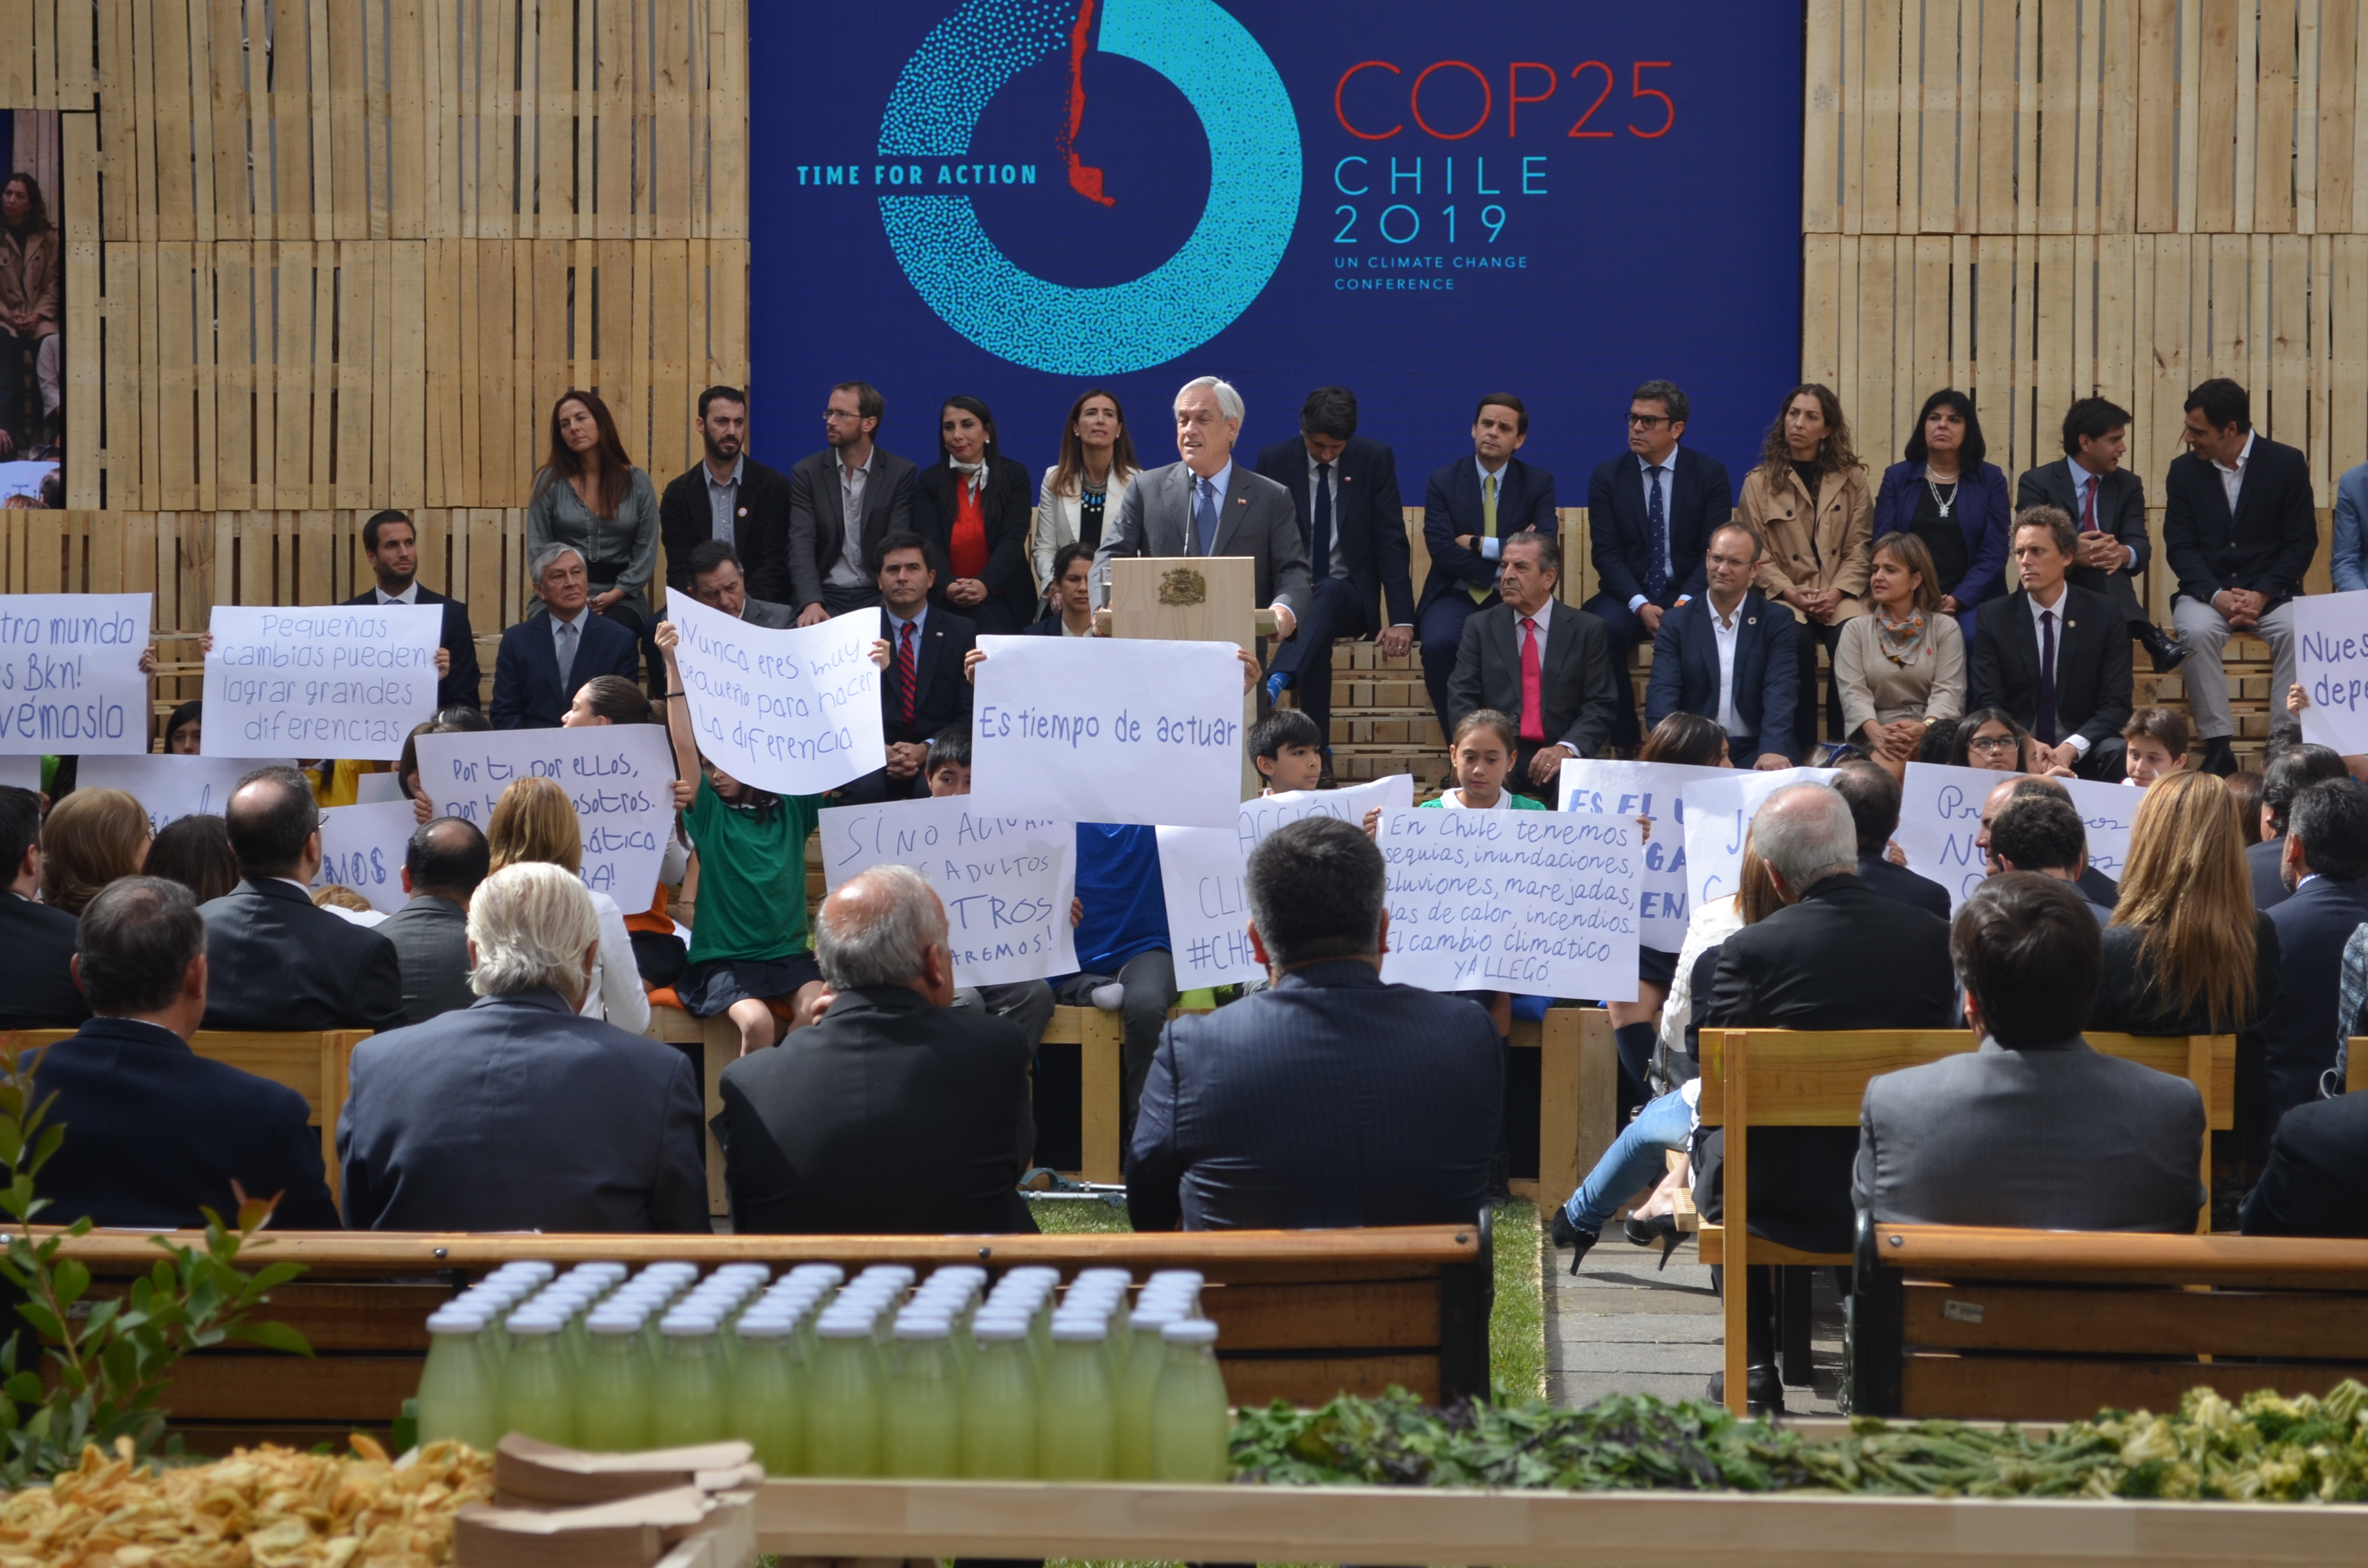 Reducir emisiones y avances legales: los pendientes de Chile ante la COP25